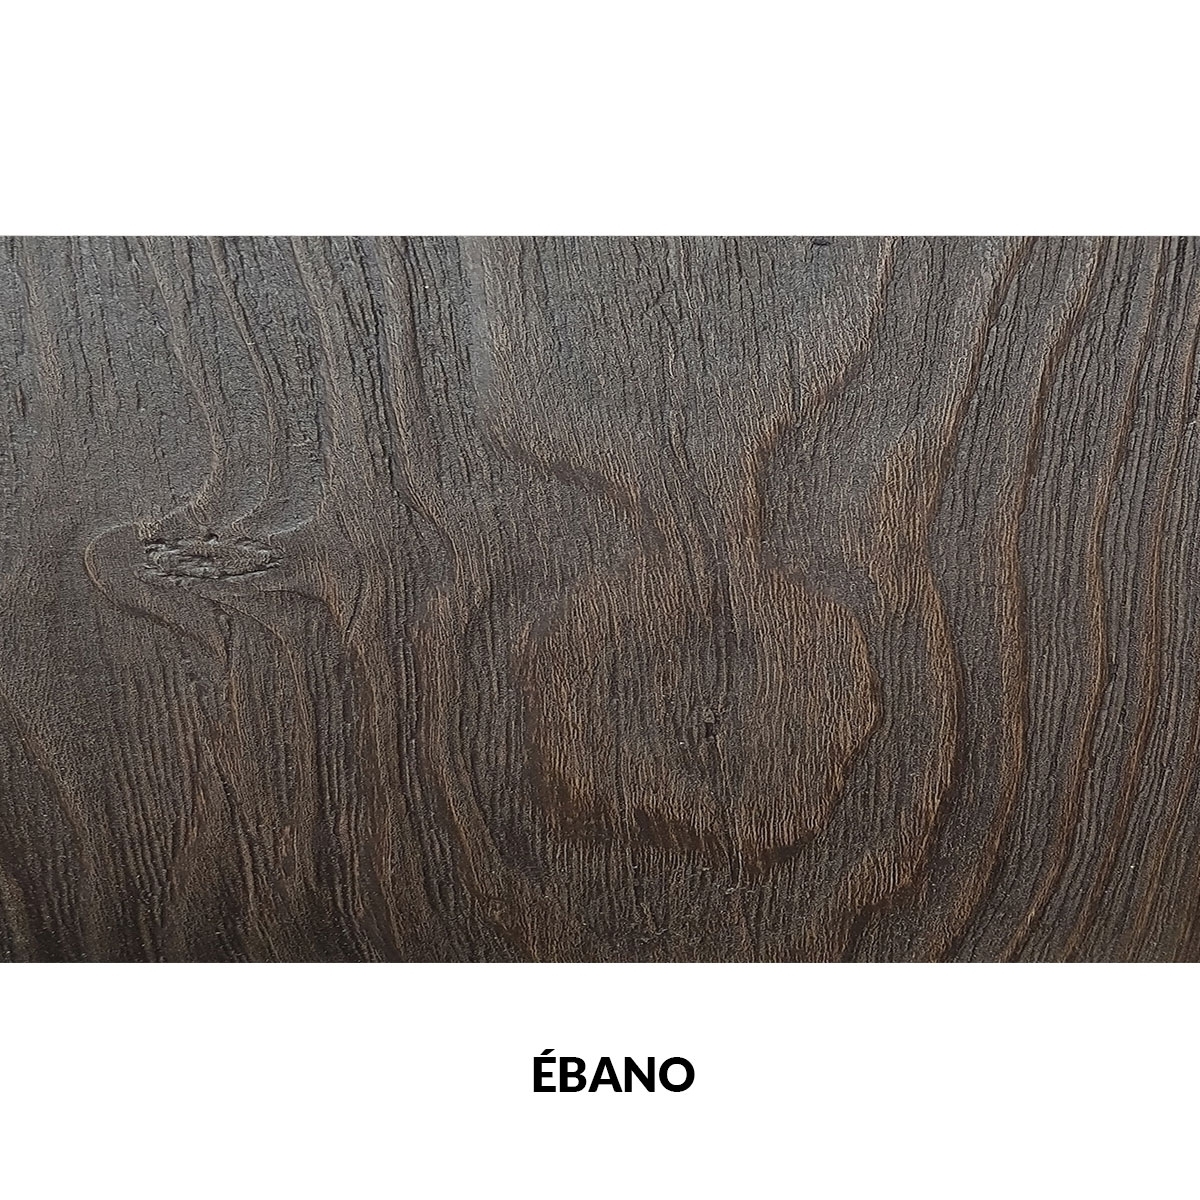 300x62cm painel rústico sem ripas imitação de madeira ébano 300x62cm